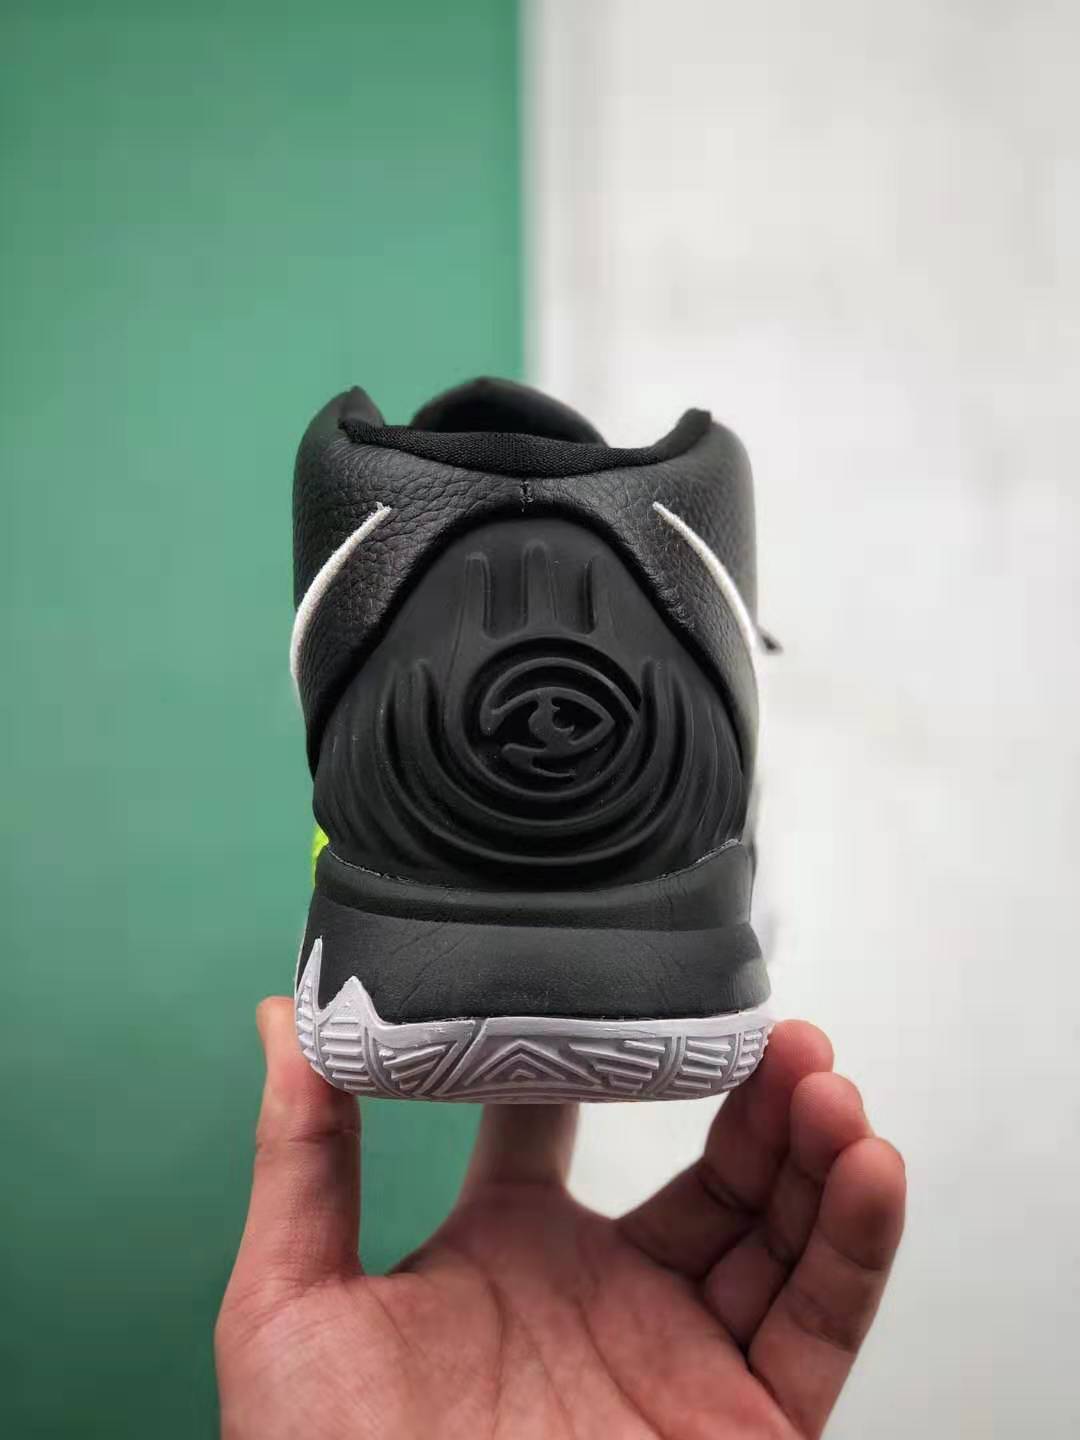 Nike Kyrie 6 EP Black White BQ9377 001 - Premium Basketball Shoes